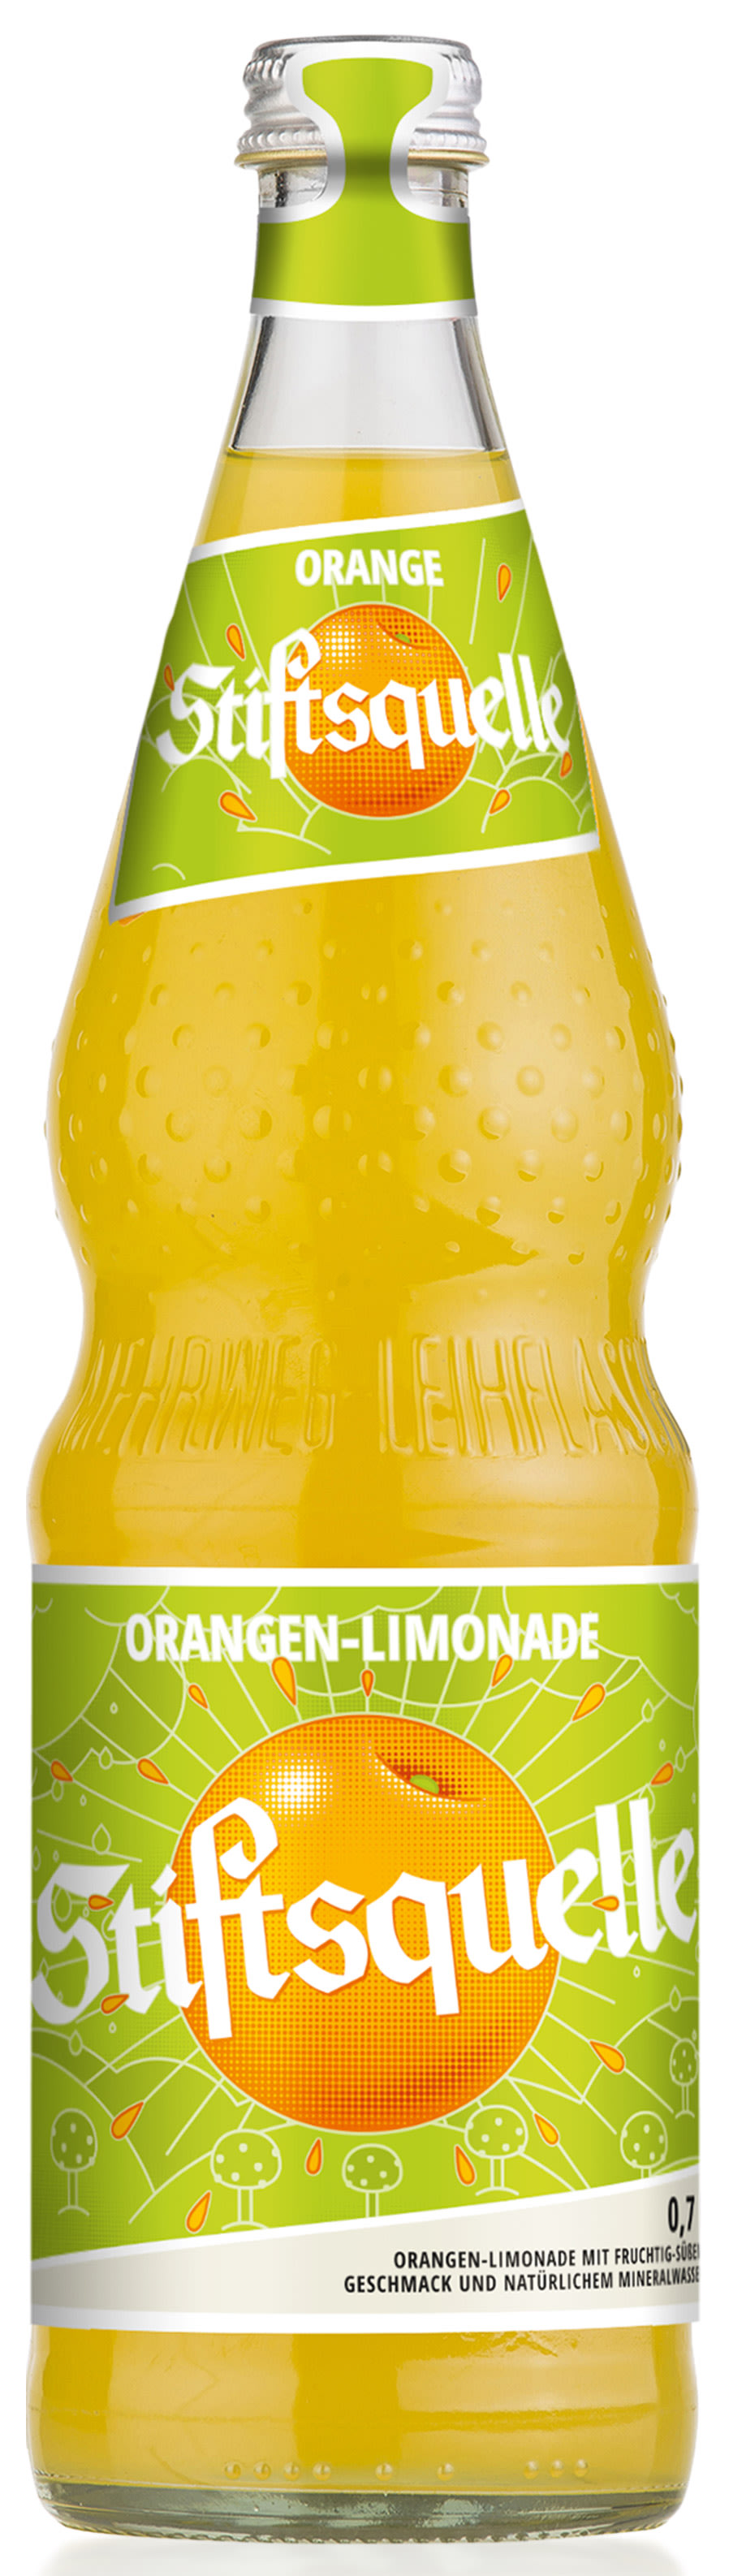 Stiftsquelle Limonade Orange Kasten 12 x 0,7 l Glas Mehrweg